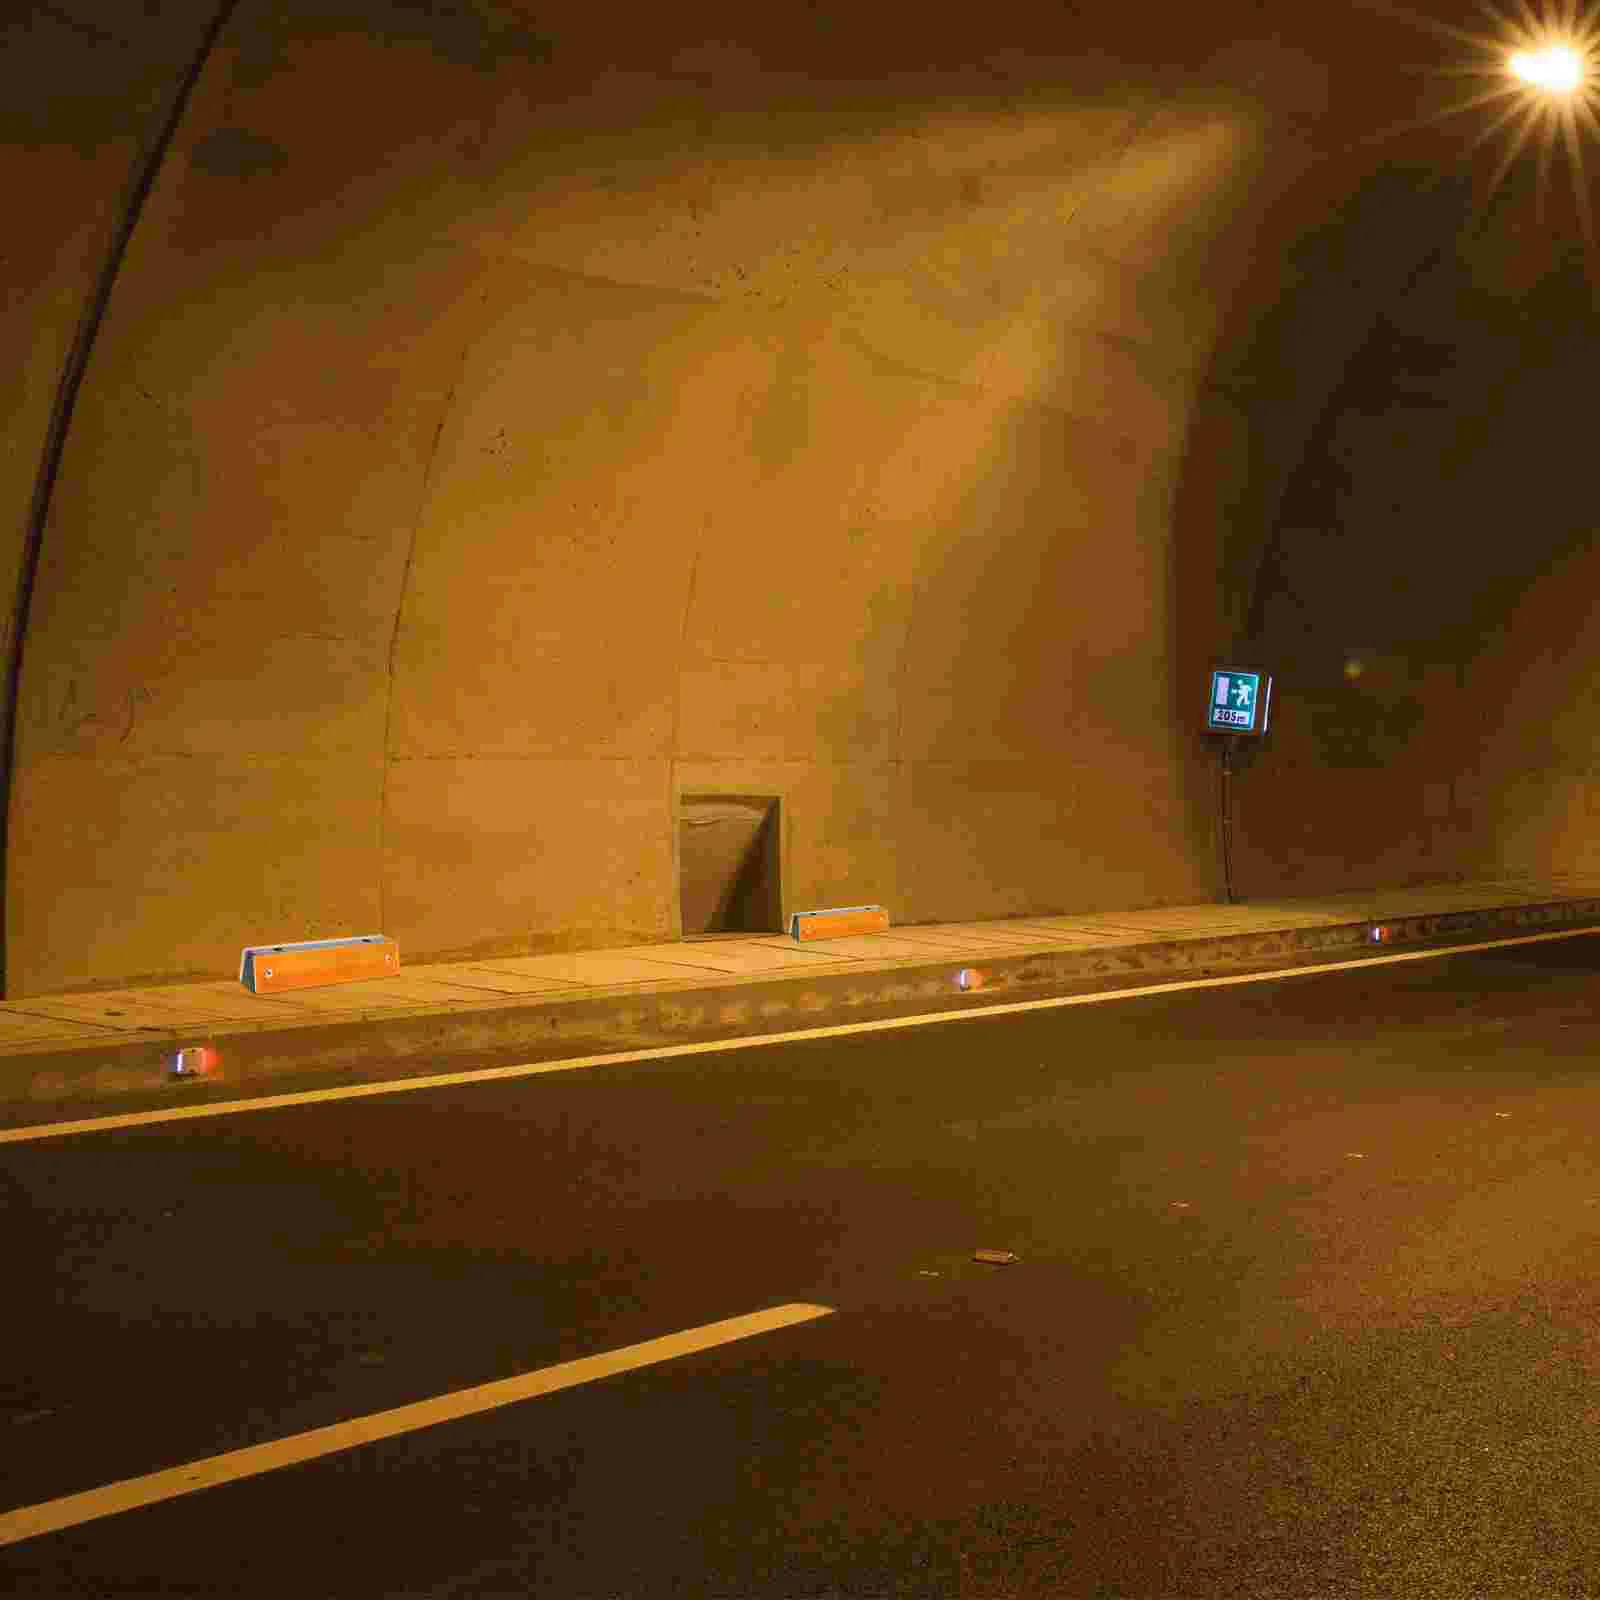 4 Pcs Guide Sign Versatilen Reflectors For Driveway Entrance Rectangle Night Driving Reflectors Reflectors For Driveway